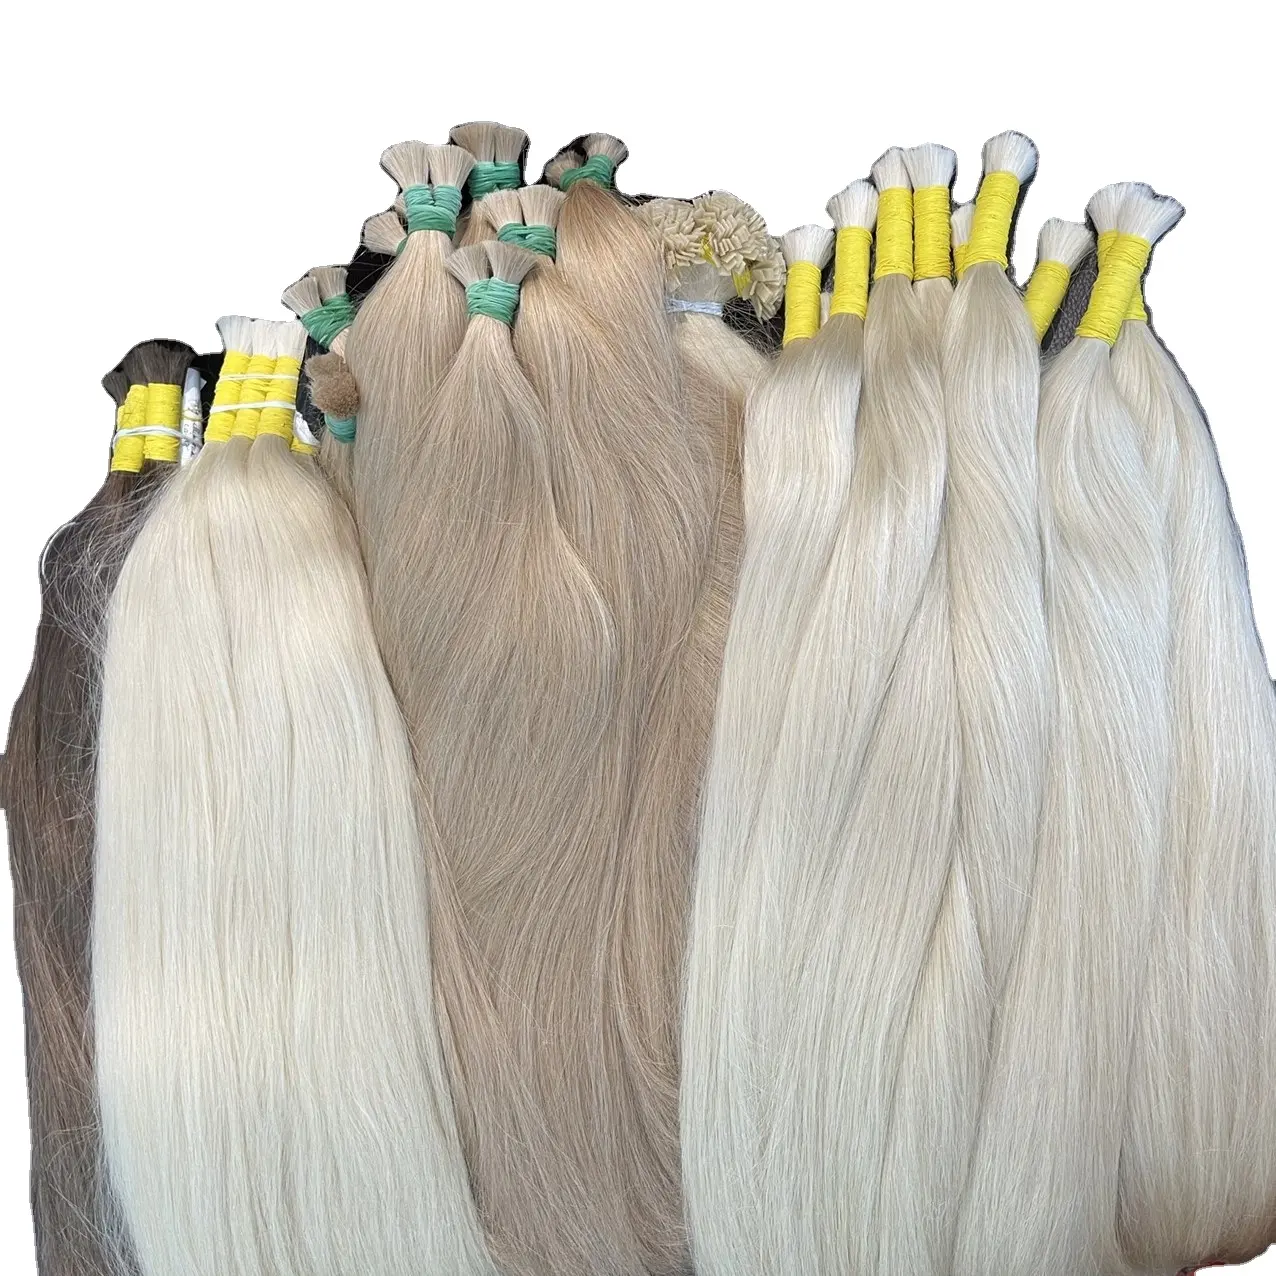 Hot sale russia straight virgin hair,Raw russian blonde human hair bulk bundles 100% Human hair Blonde color